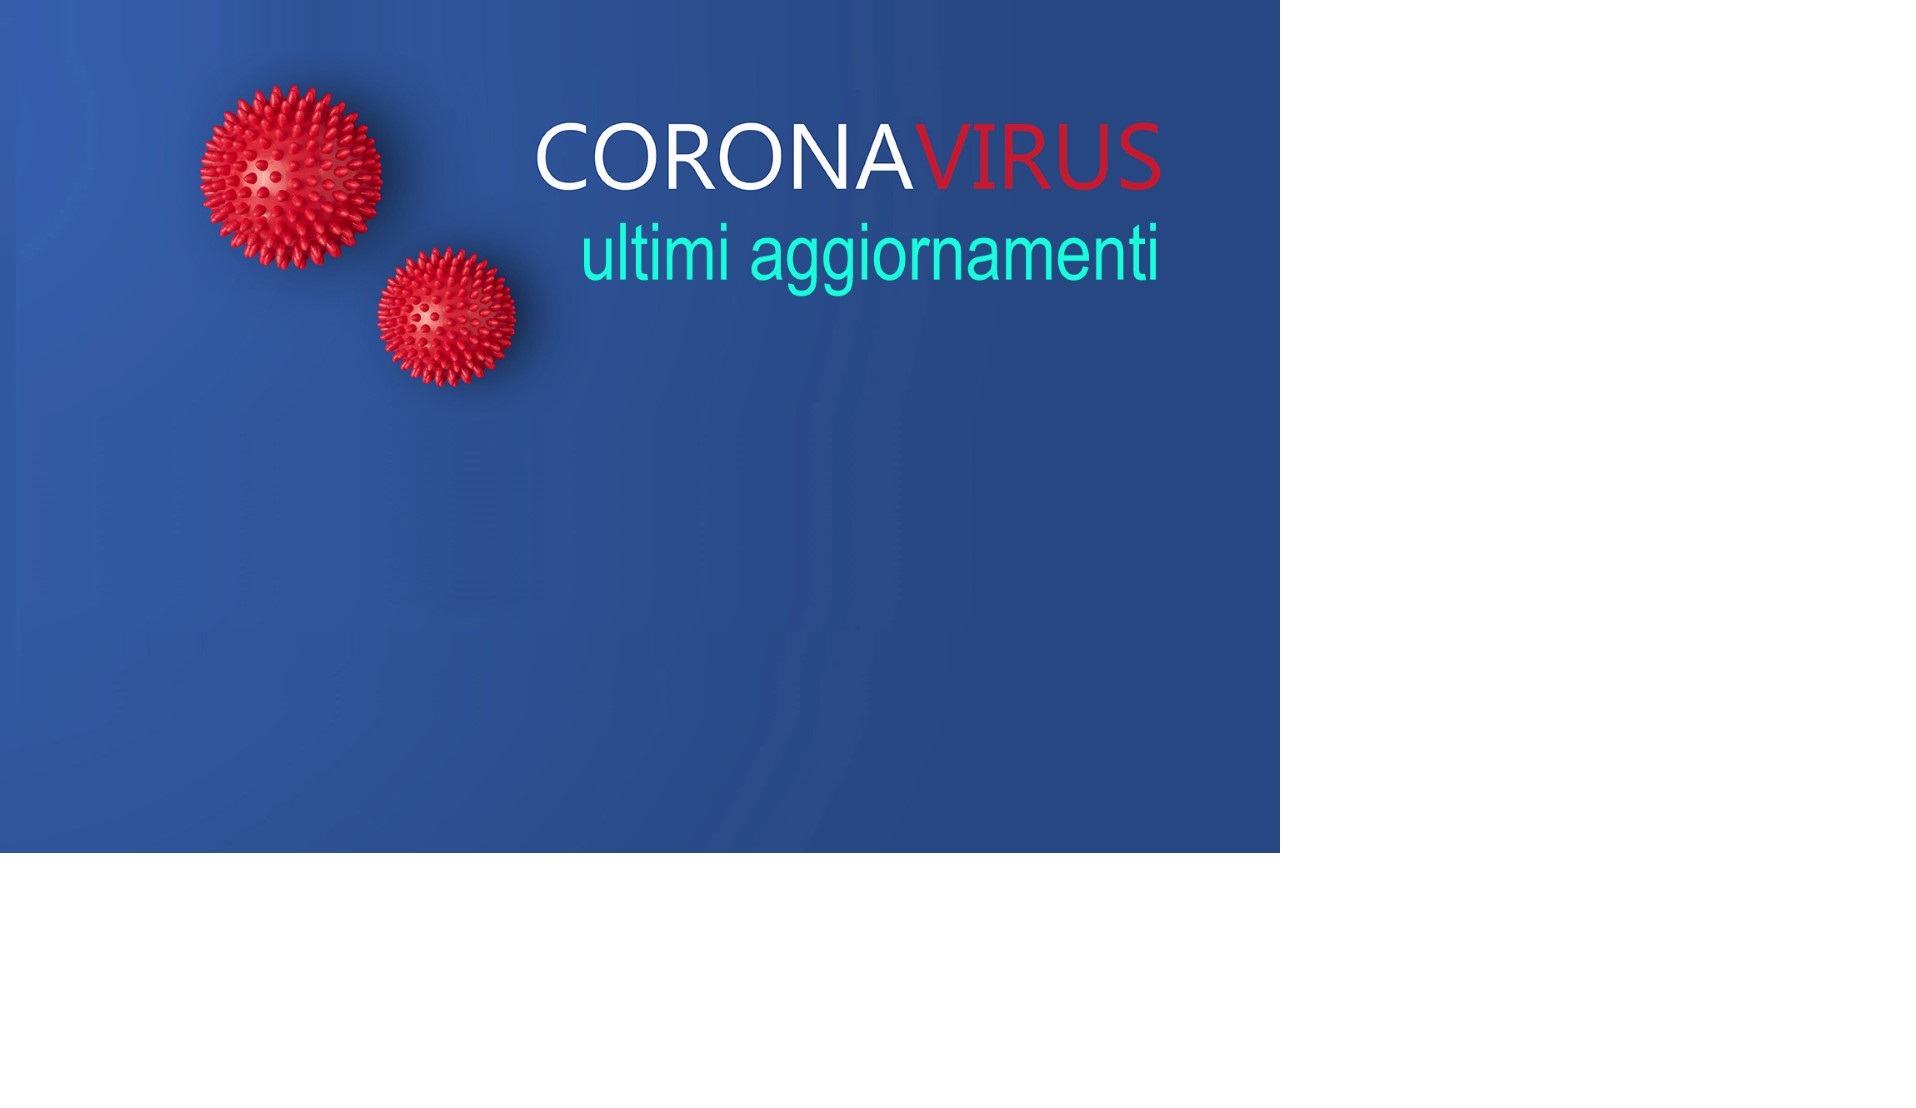 Coronavirus - Ultimi aggiornamenti